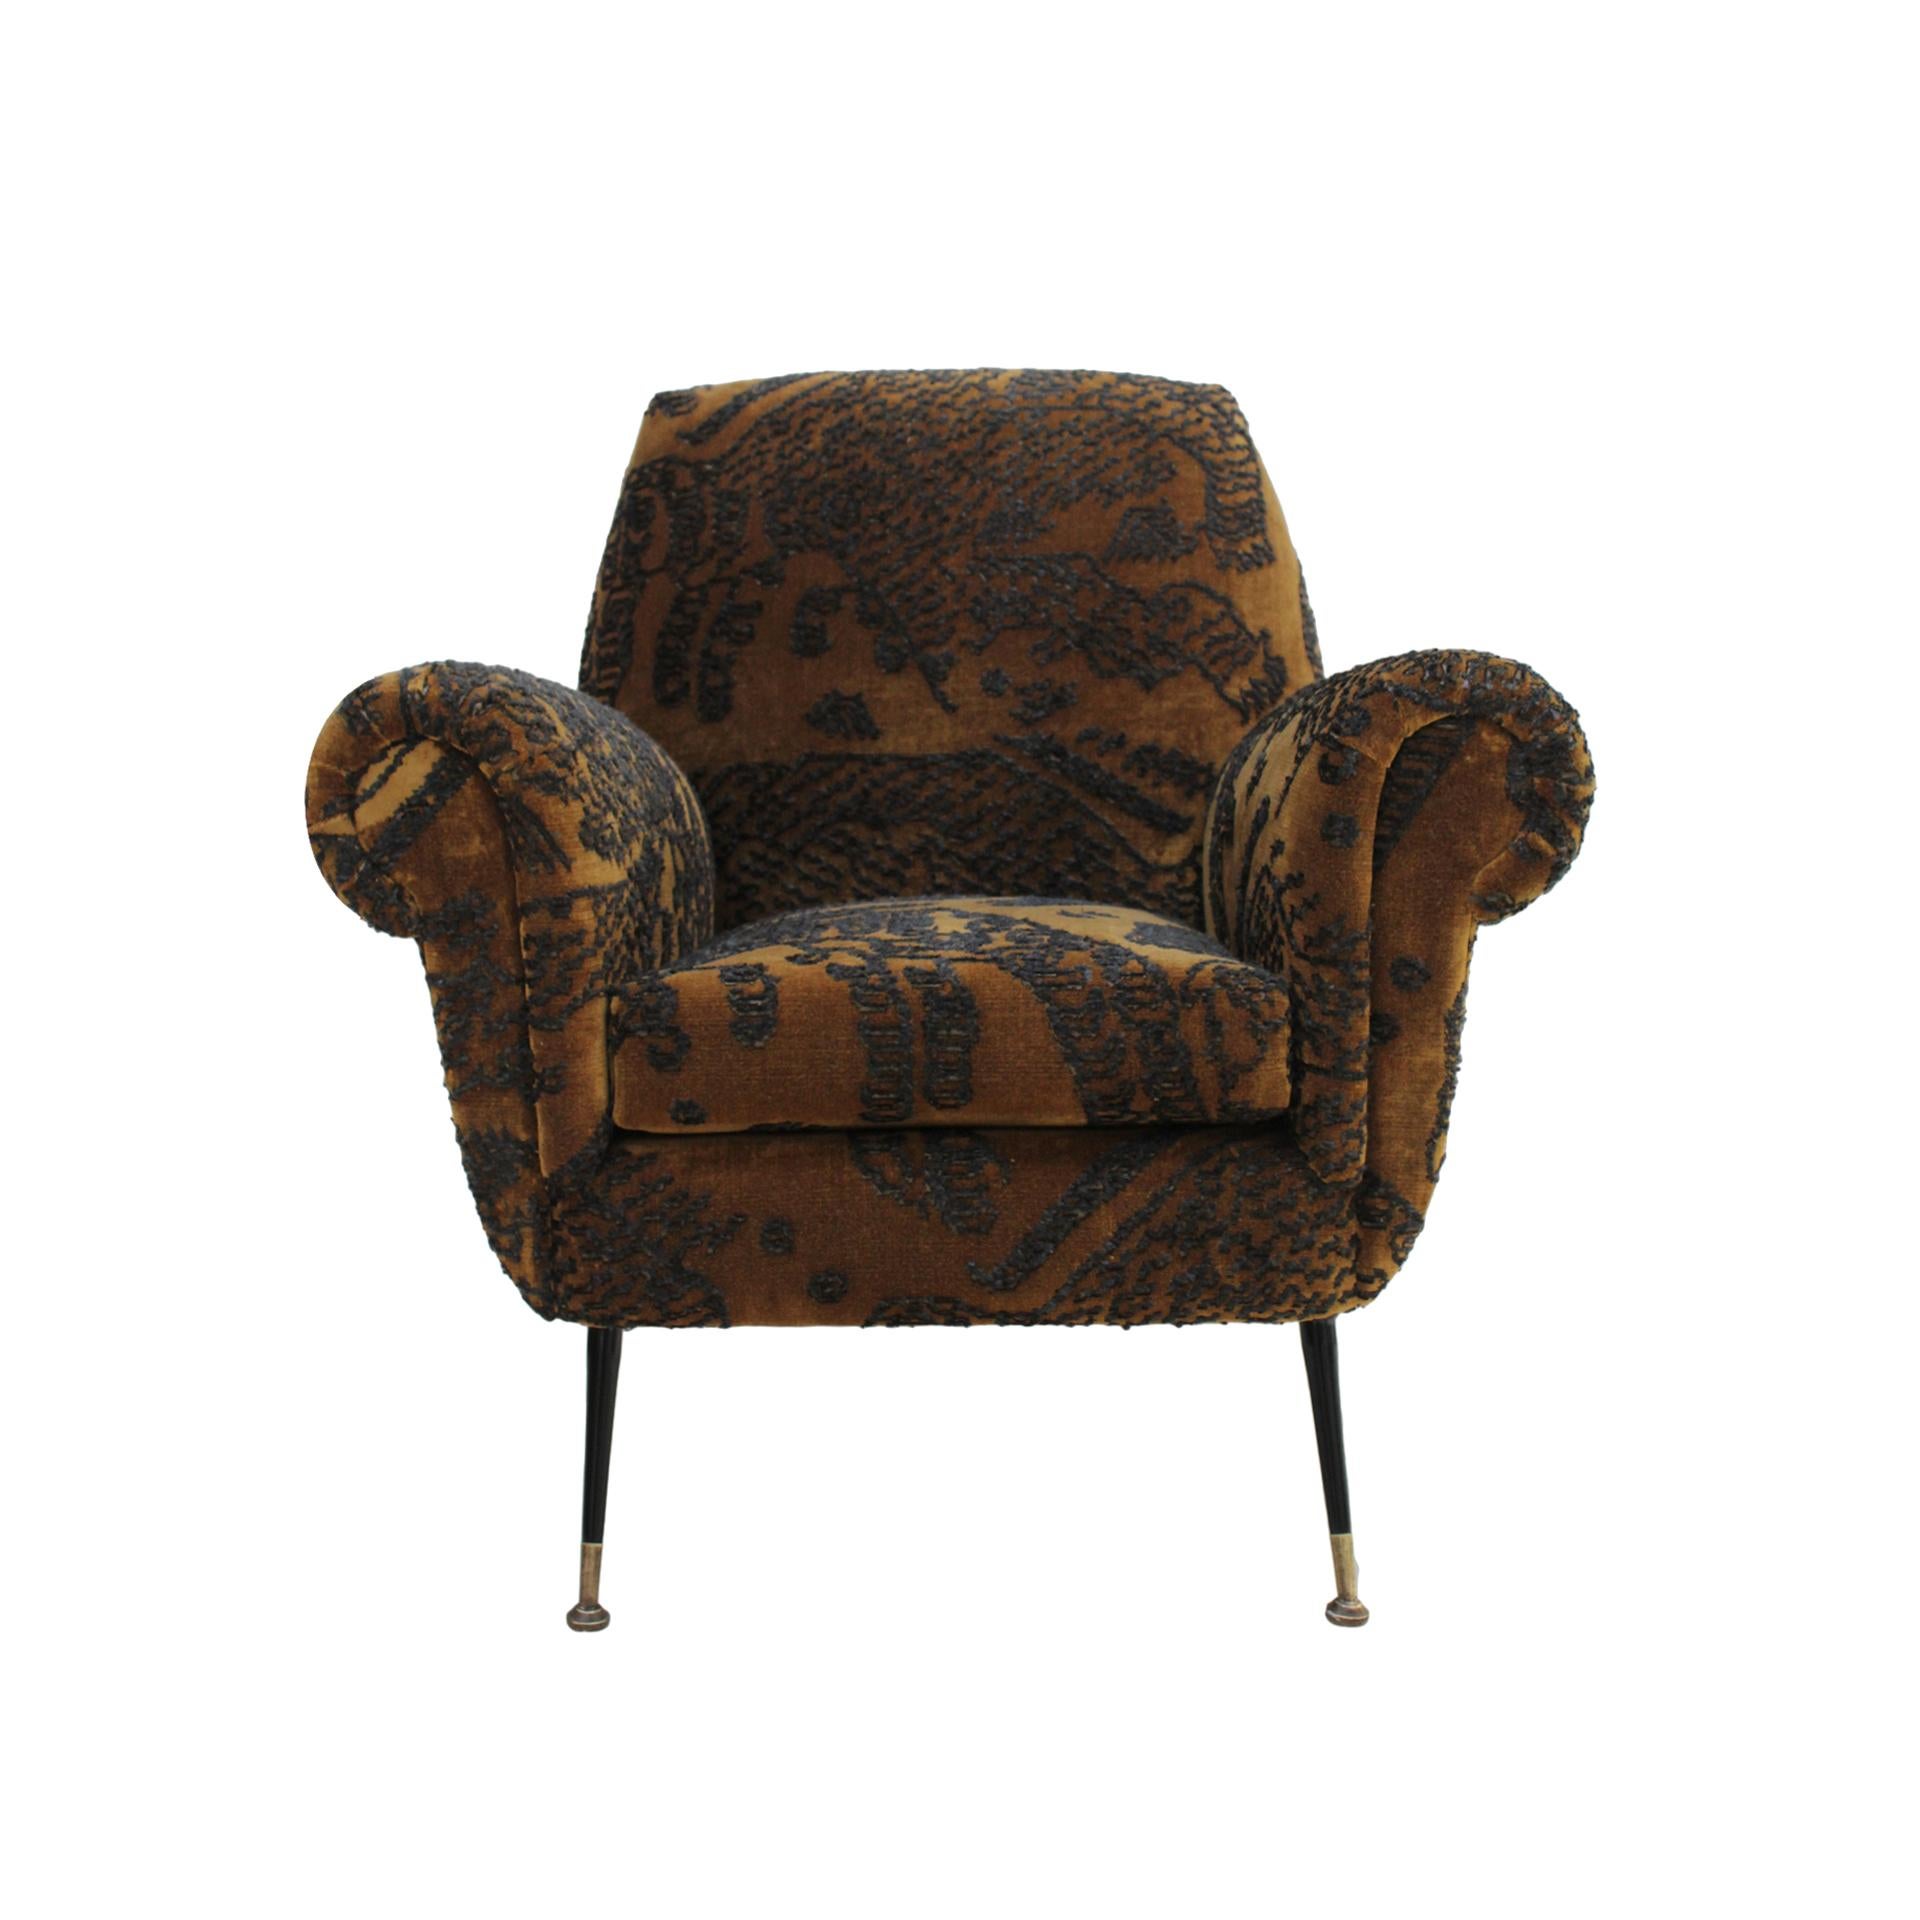 Paire de fauteuils conçus par Gigi Radice pour Minotti avec une structure en bois massif et des pieds en métal. Rembourré en velours jacquard Dedar, inspiré à l'origine par les tapis tibétains.

Chaque article proposé par LA Studio est contrôlé par